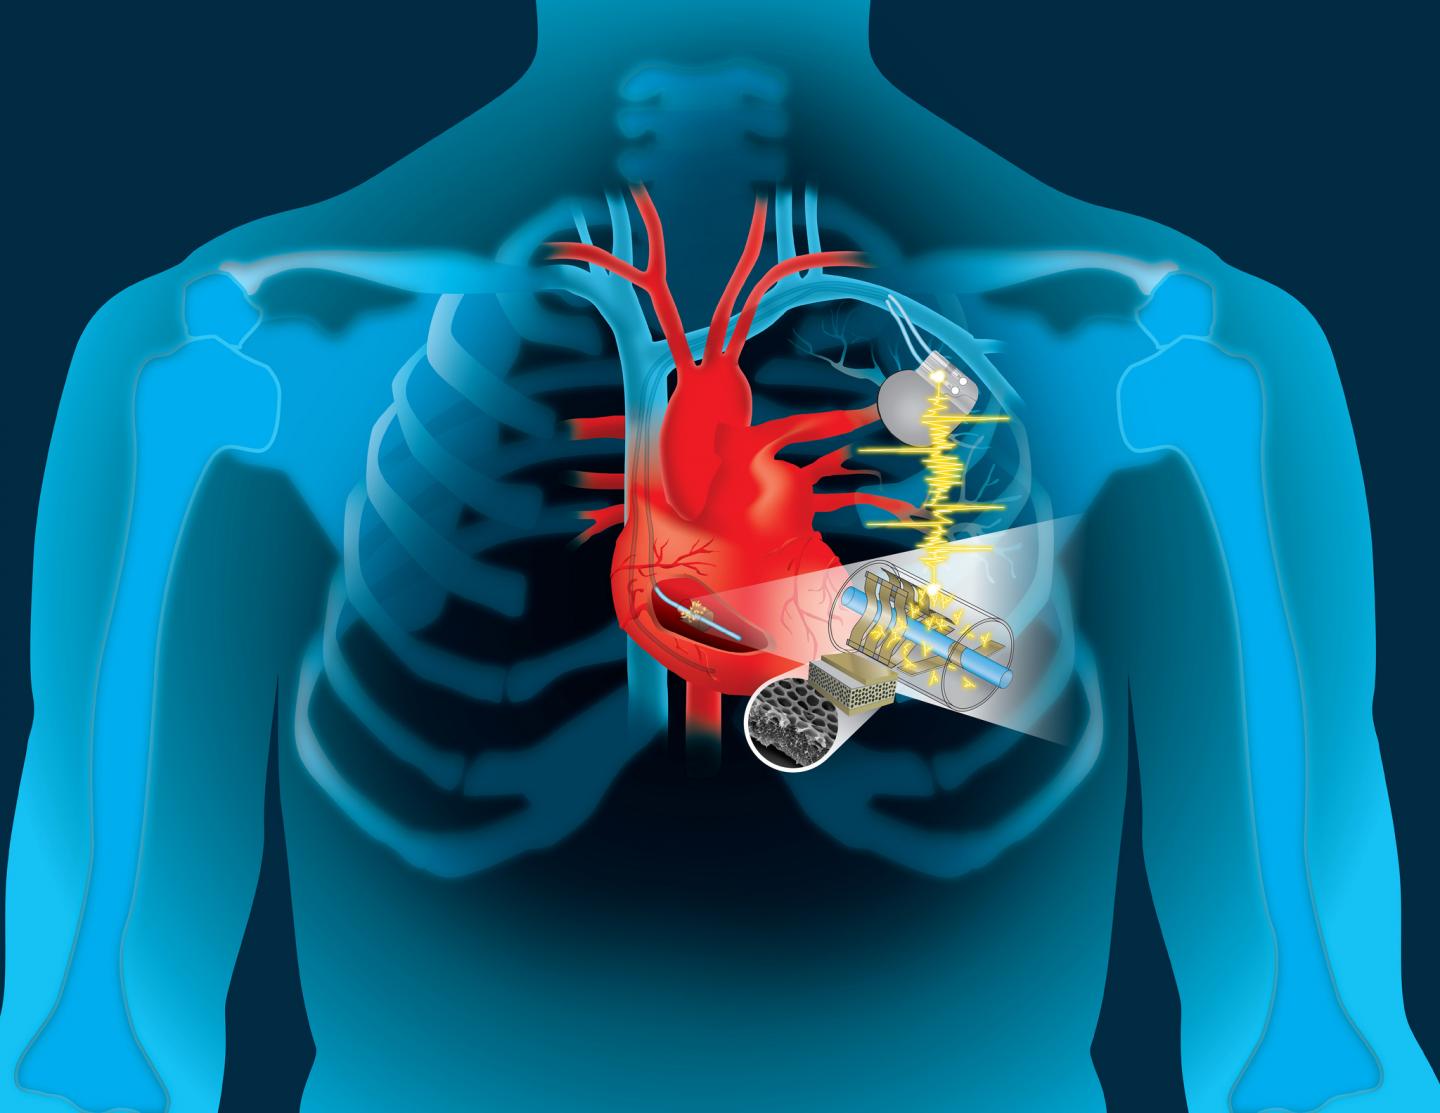 अनन्त मोटर: दिल की ऊर्जा इस्तेमाल किया जा सकता है रिचार्ज करने के लिए पेसमेकर